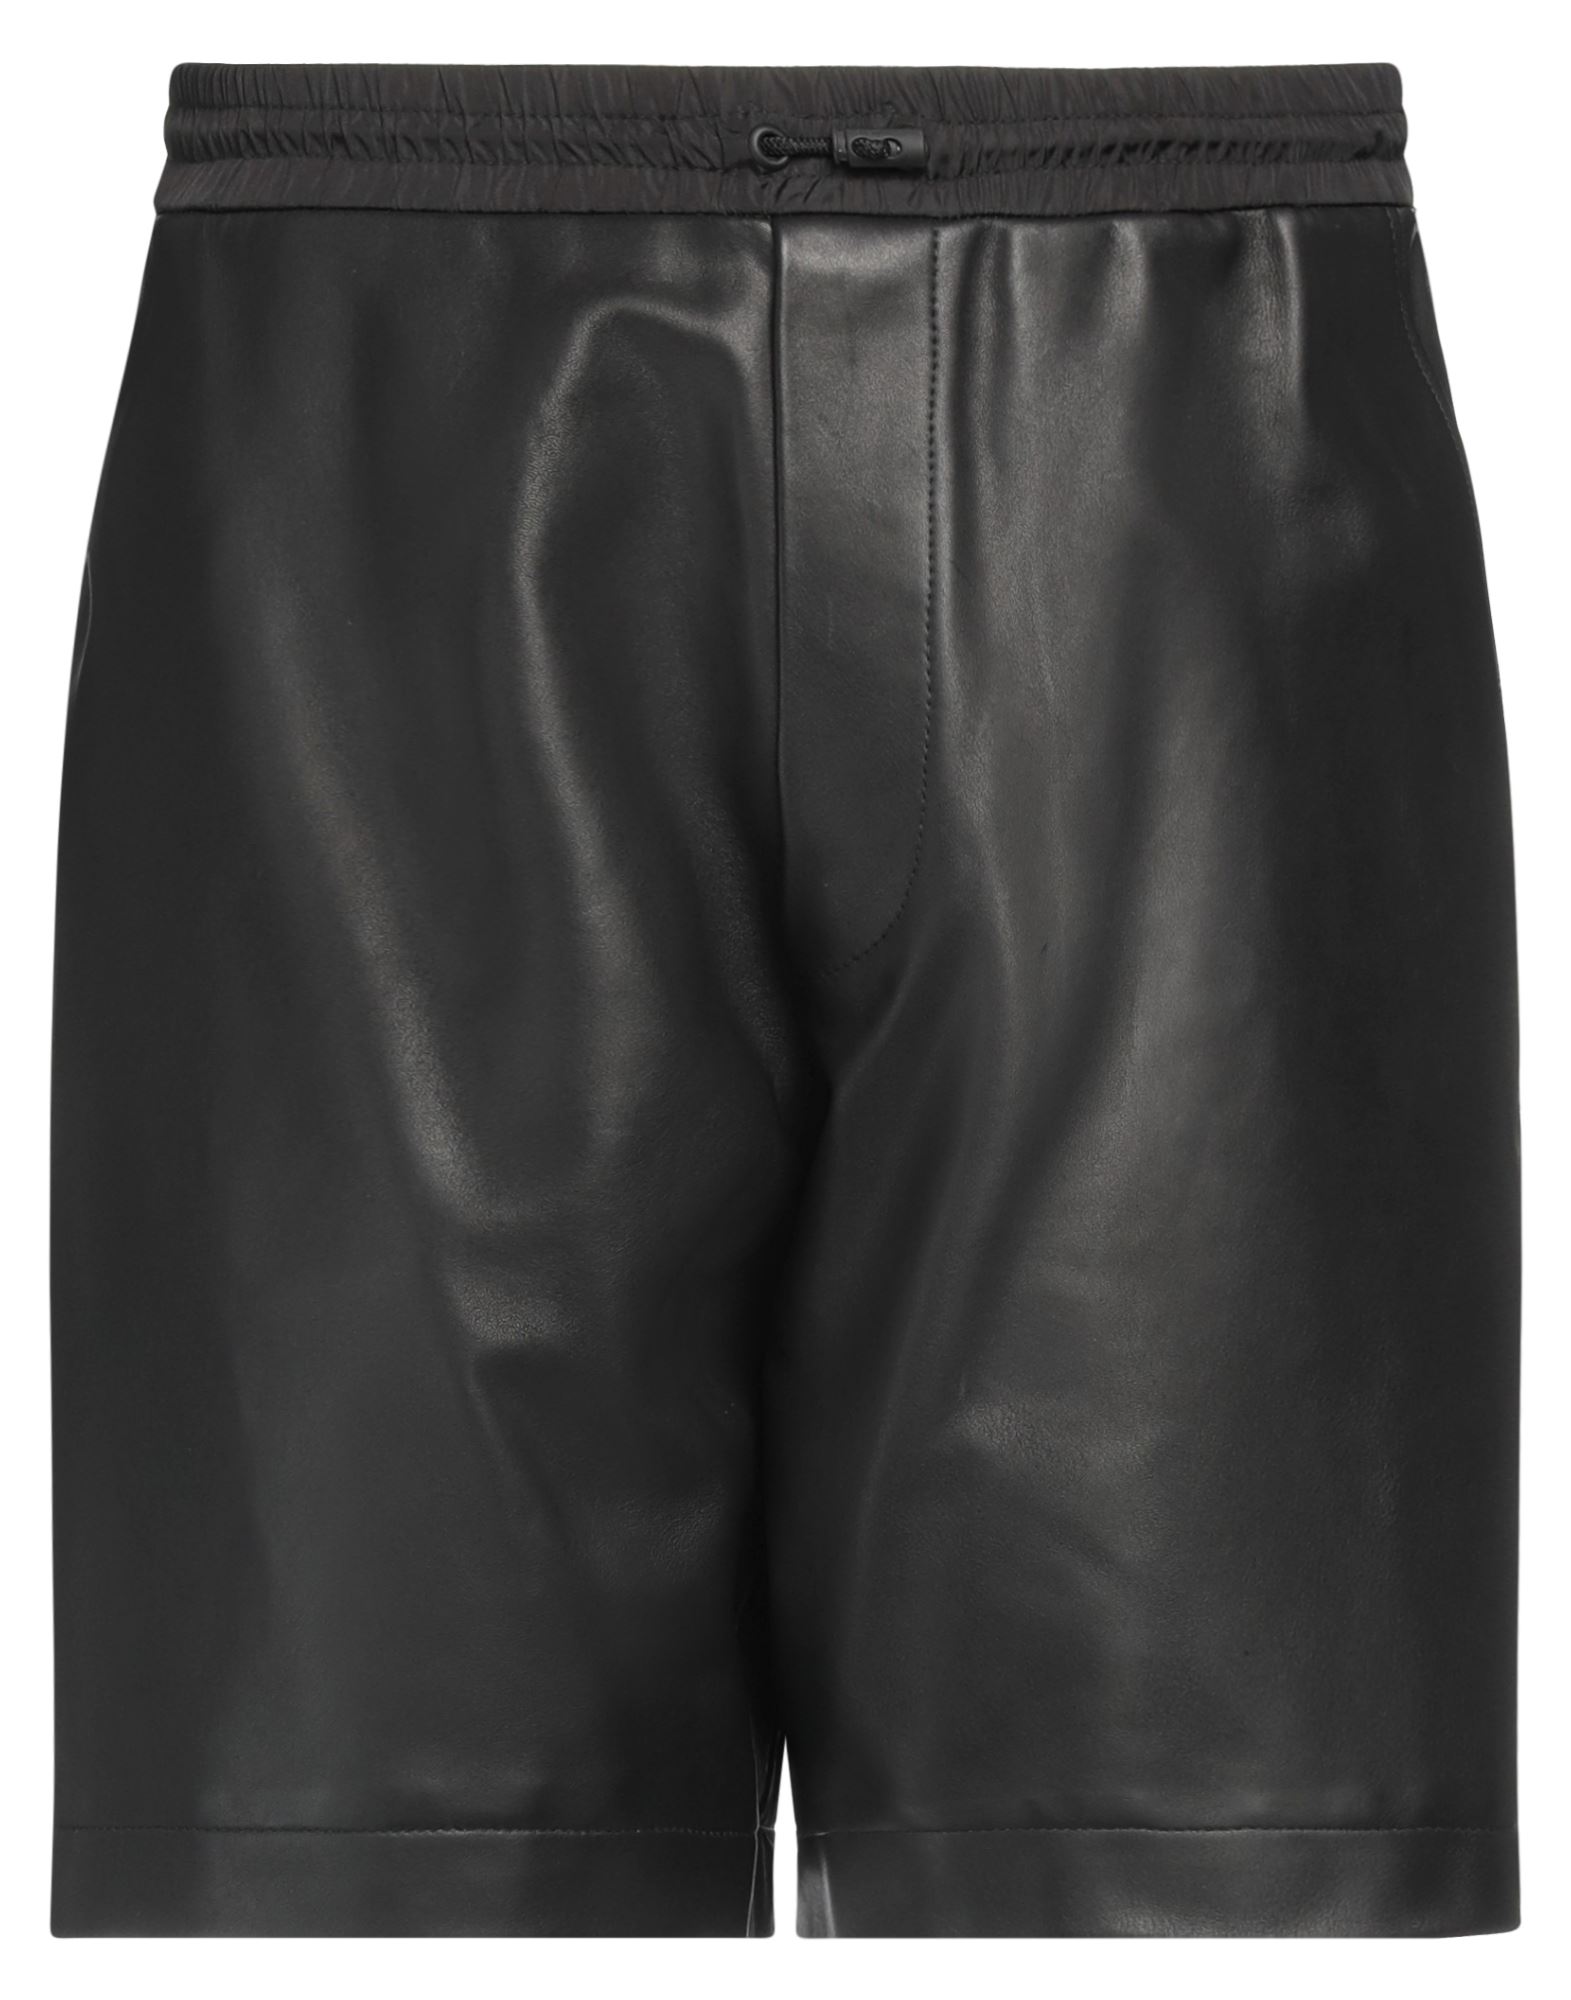 Dsquared2 Man Shorts & Bermuda Shorts Black Size 32 Ovine Leather